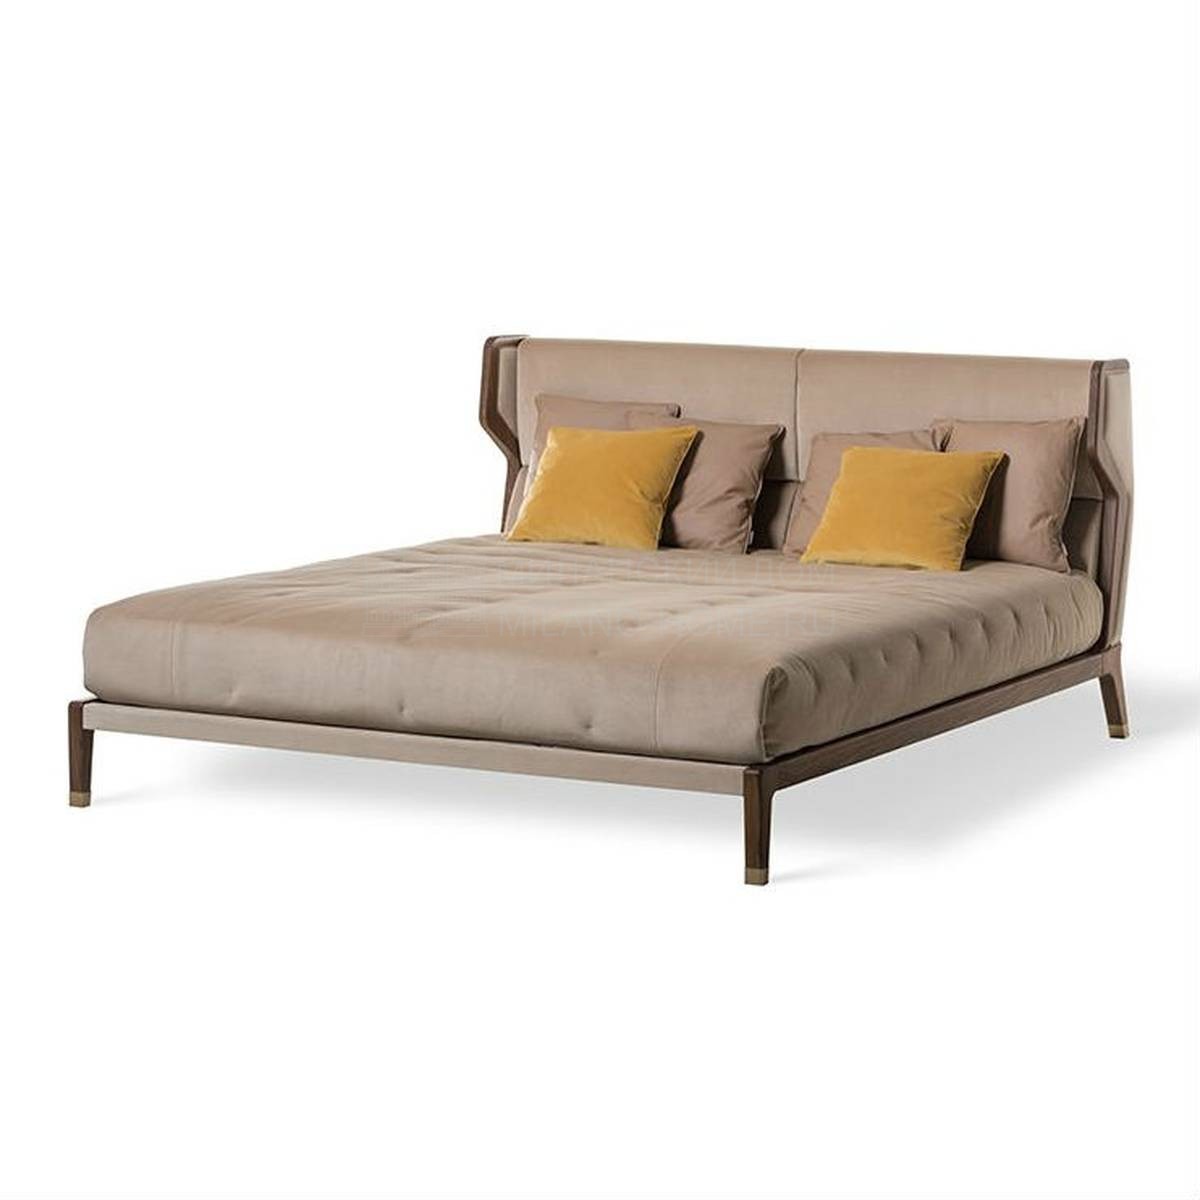 Кровать с мягким изголовьем Greg bed из Италии фабрики MEDEA (Life style)